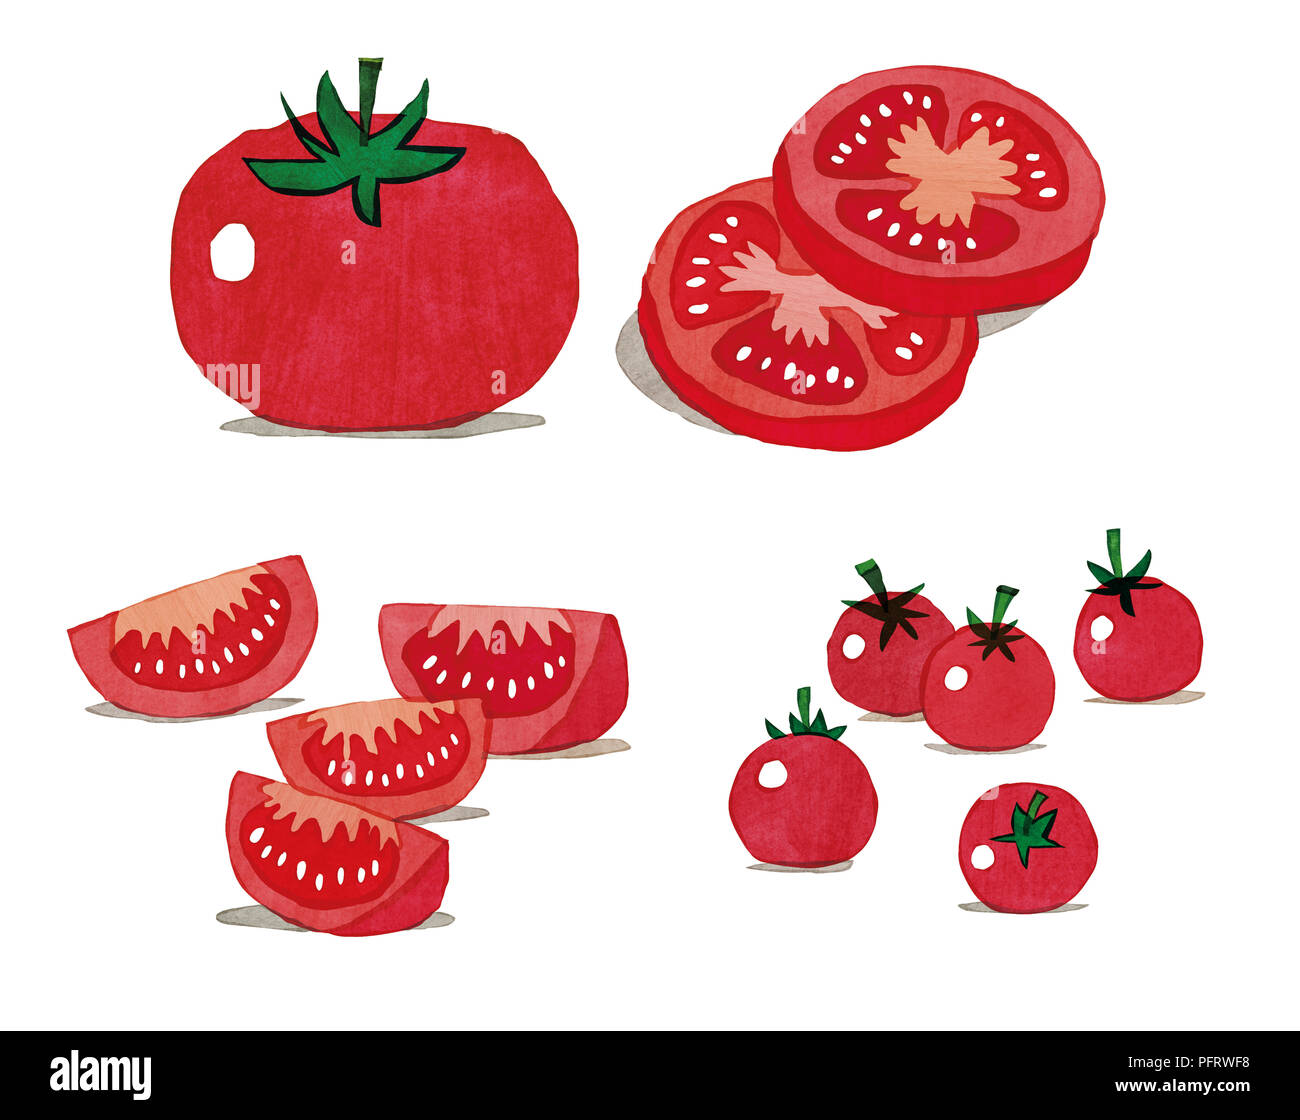 Illustration, Tomates, entières, tranchées, et des tomates cerises Banque D'Images